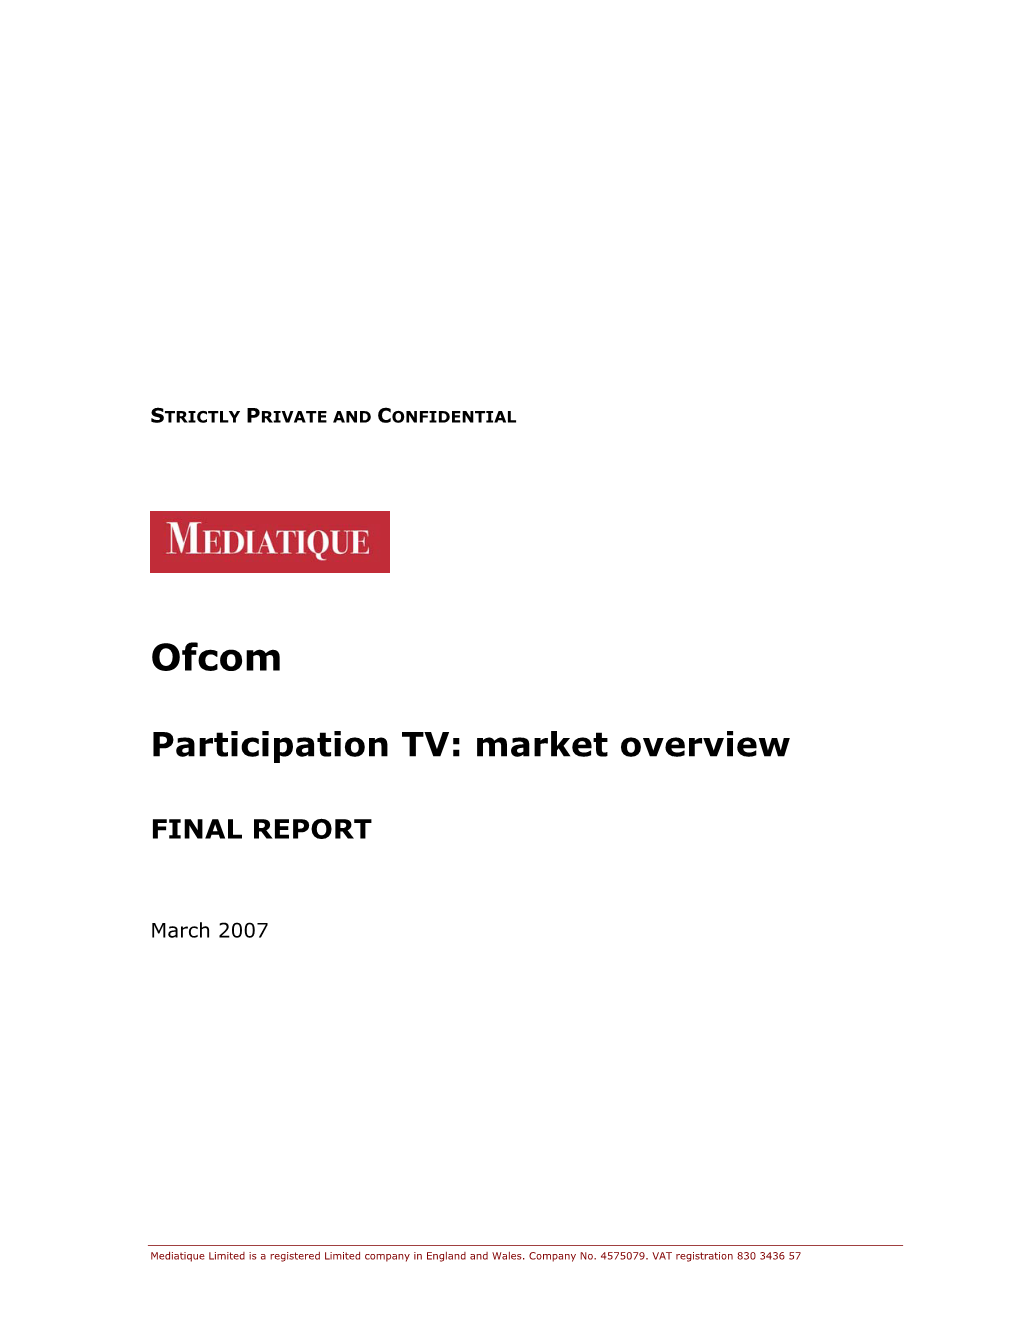 Participation TV: Market Overview